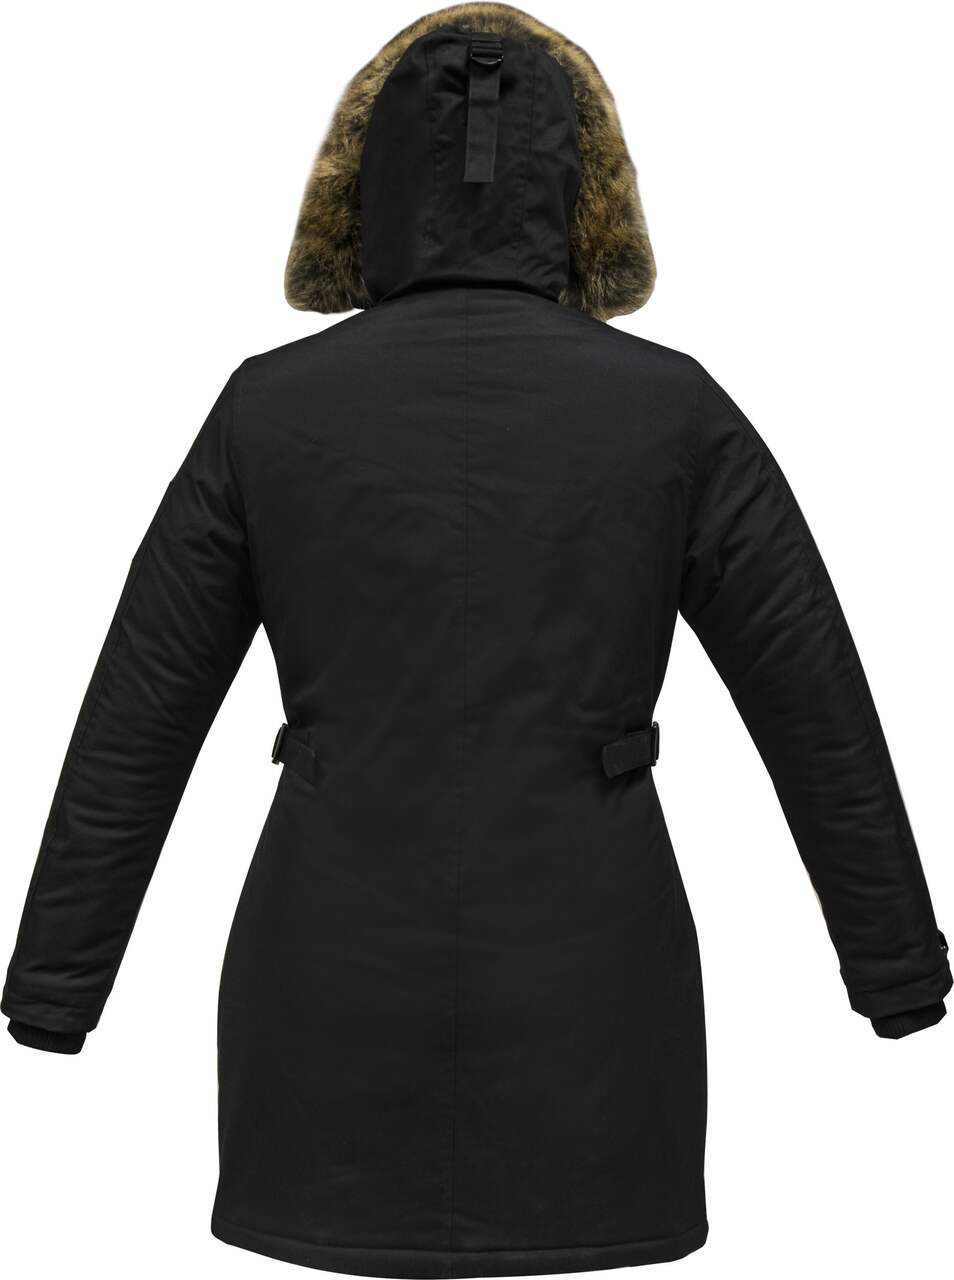 Misty Mountain Men's Iridium Hooded Winter Parka Jacket Thermal Insulated  Waterproof